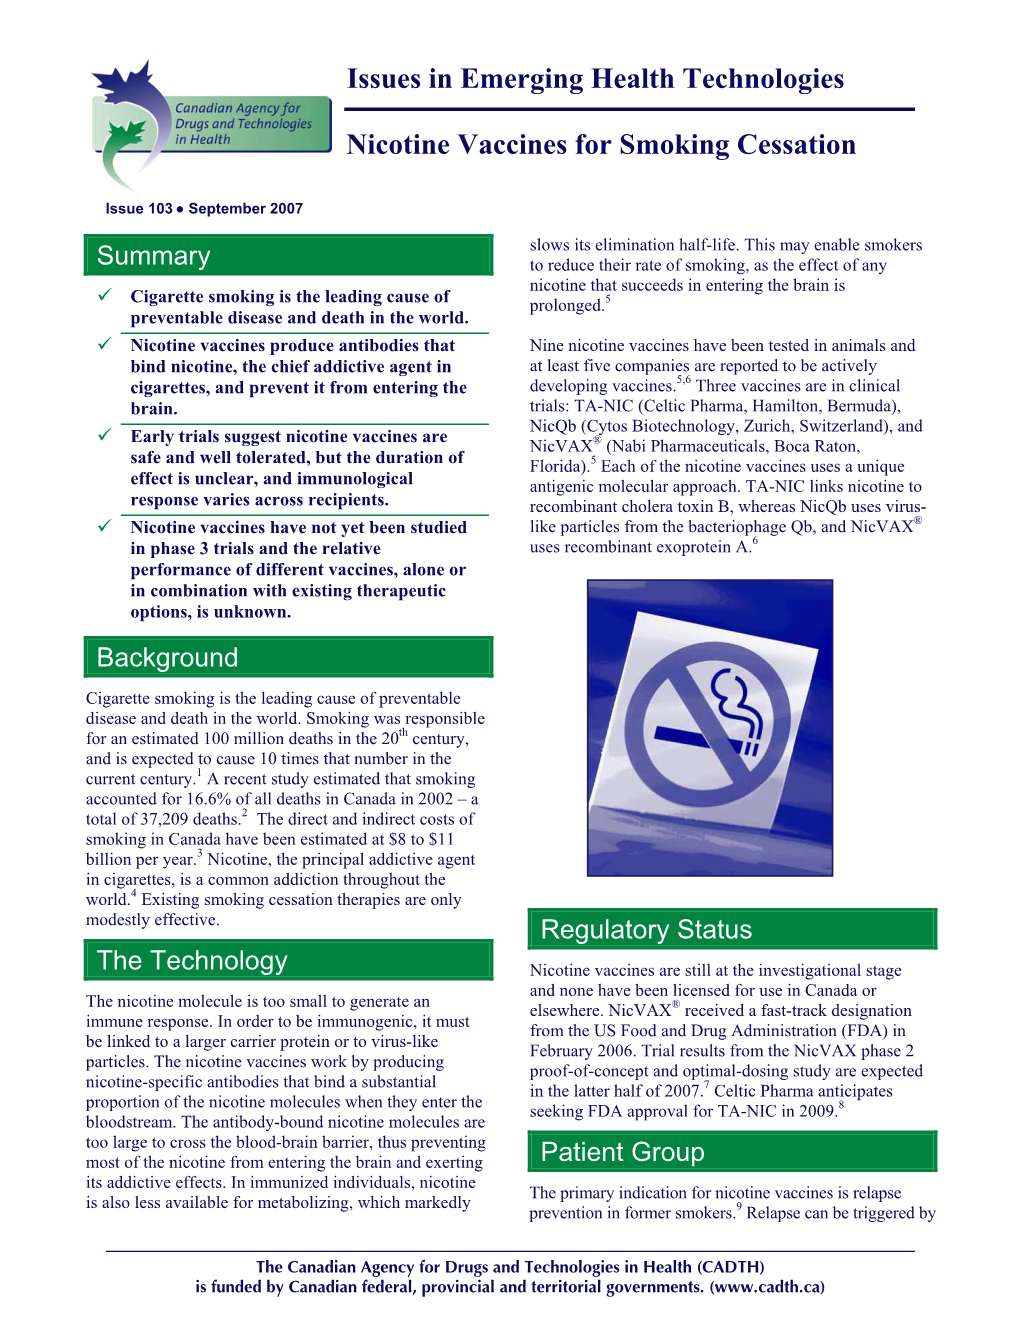 Nicotine Vaccines for Smoking Cessation